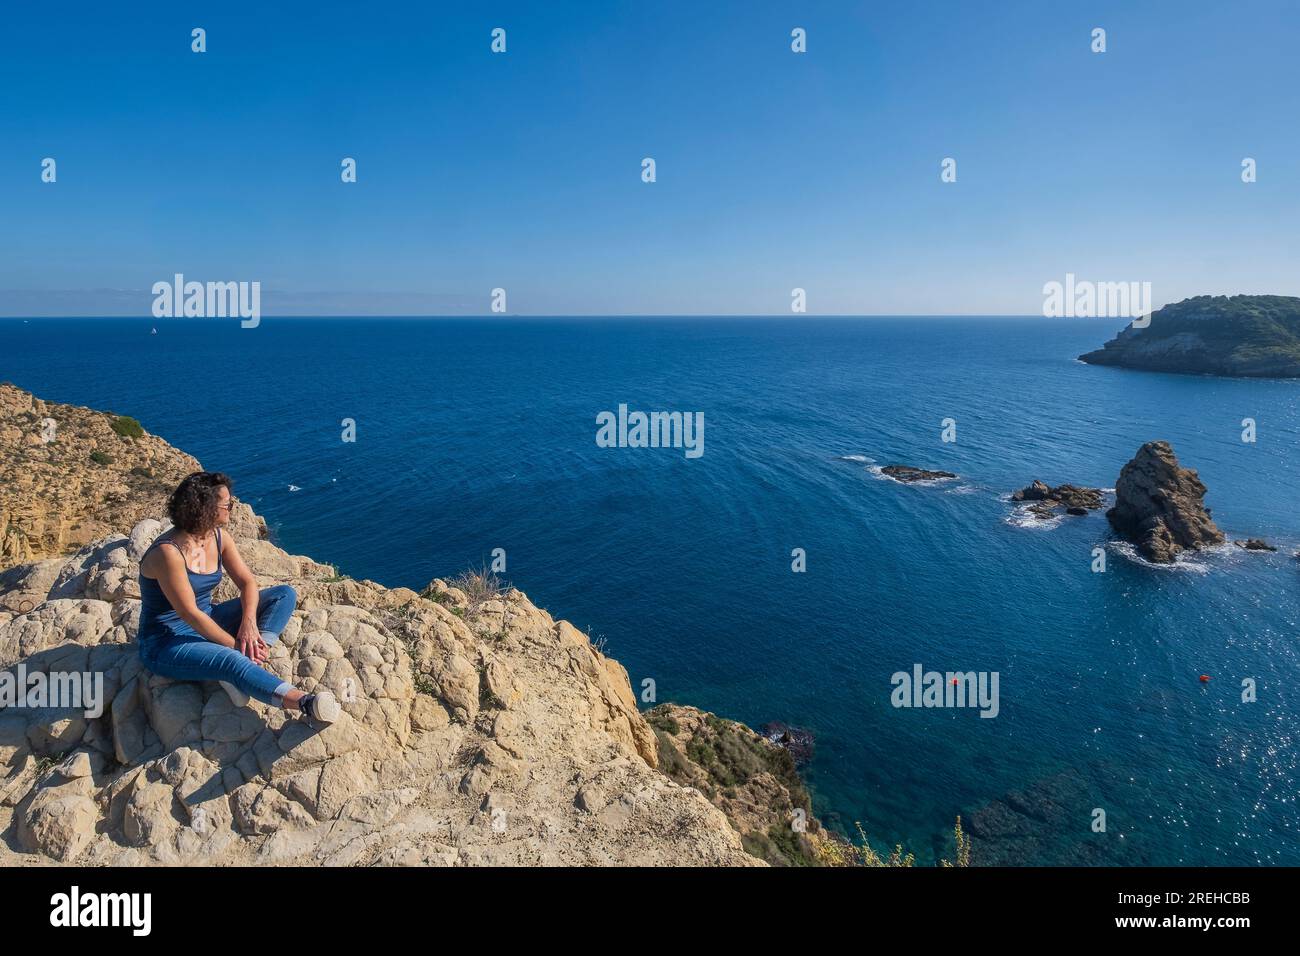 Una donna siede a Javea (Xabia) a Cap prim e guarda al mare. Foto Stock